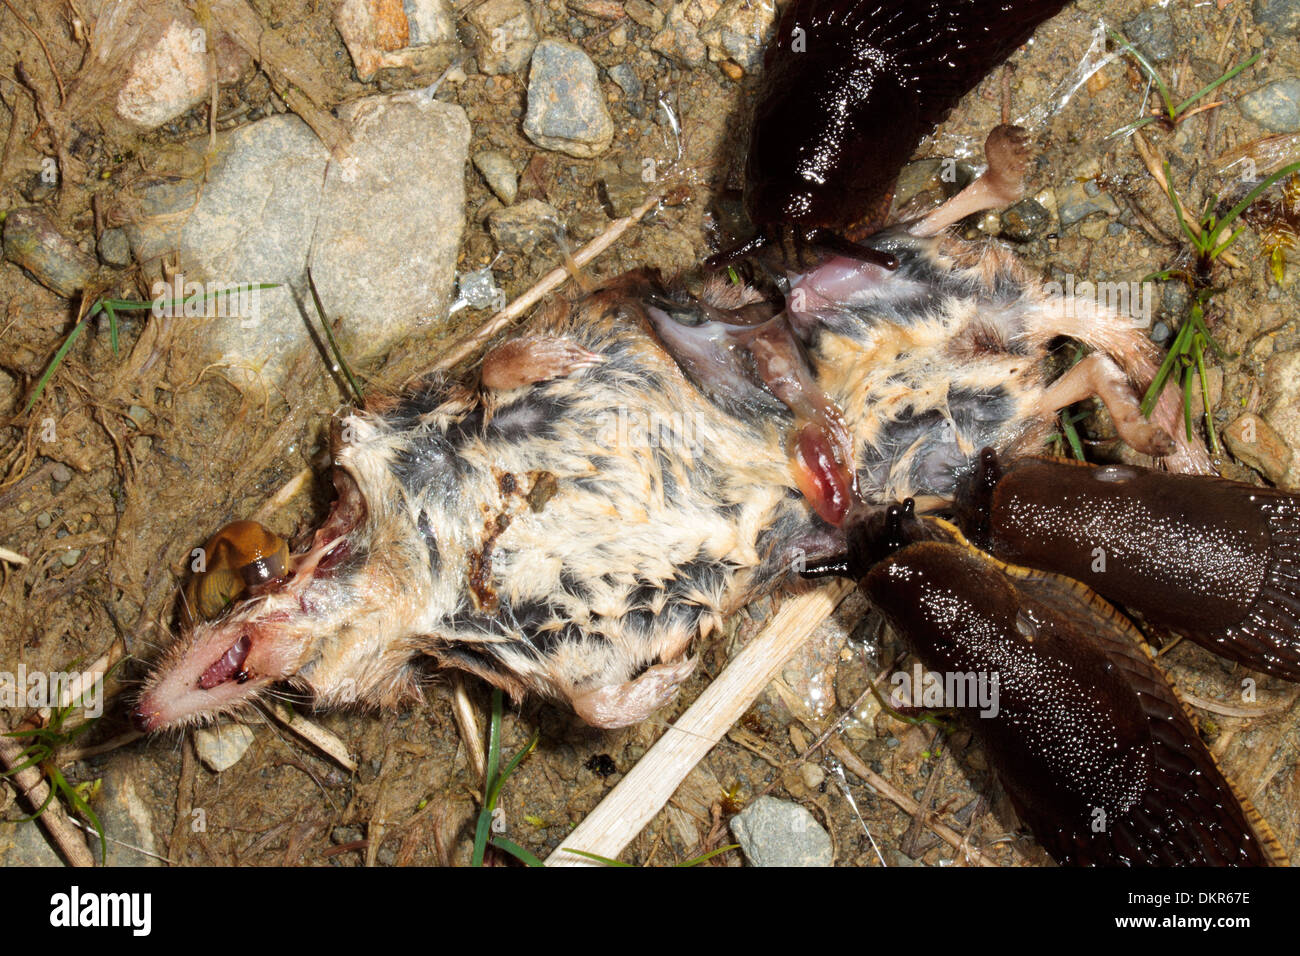 Large Garden slugs (Arion ater) feeding on the corpse of a Common Shrew (Sorex araneus). Powys, Wales. July. Stock Photo